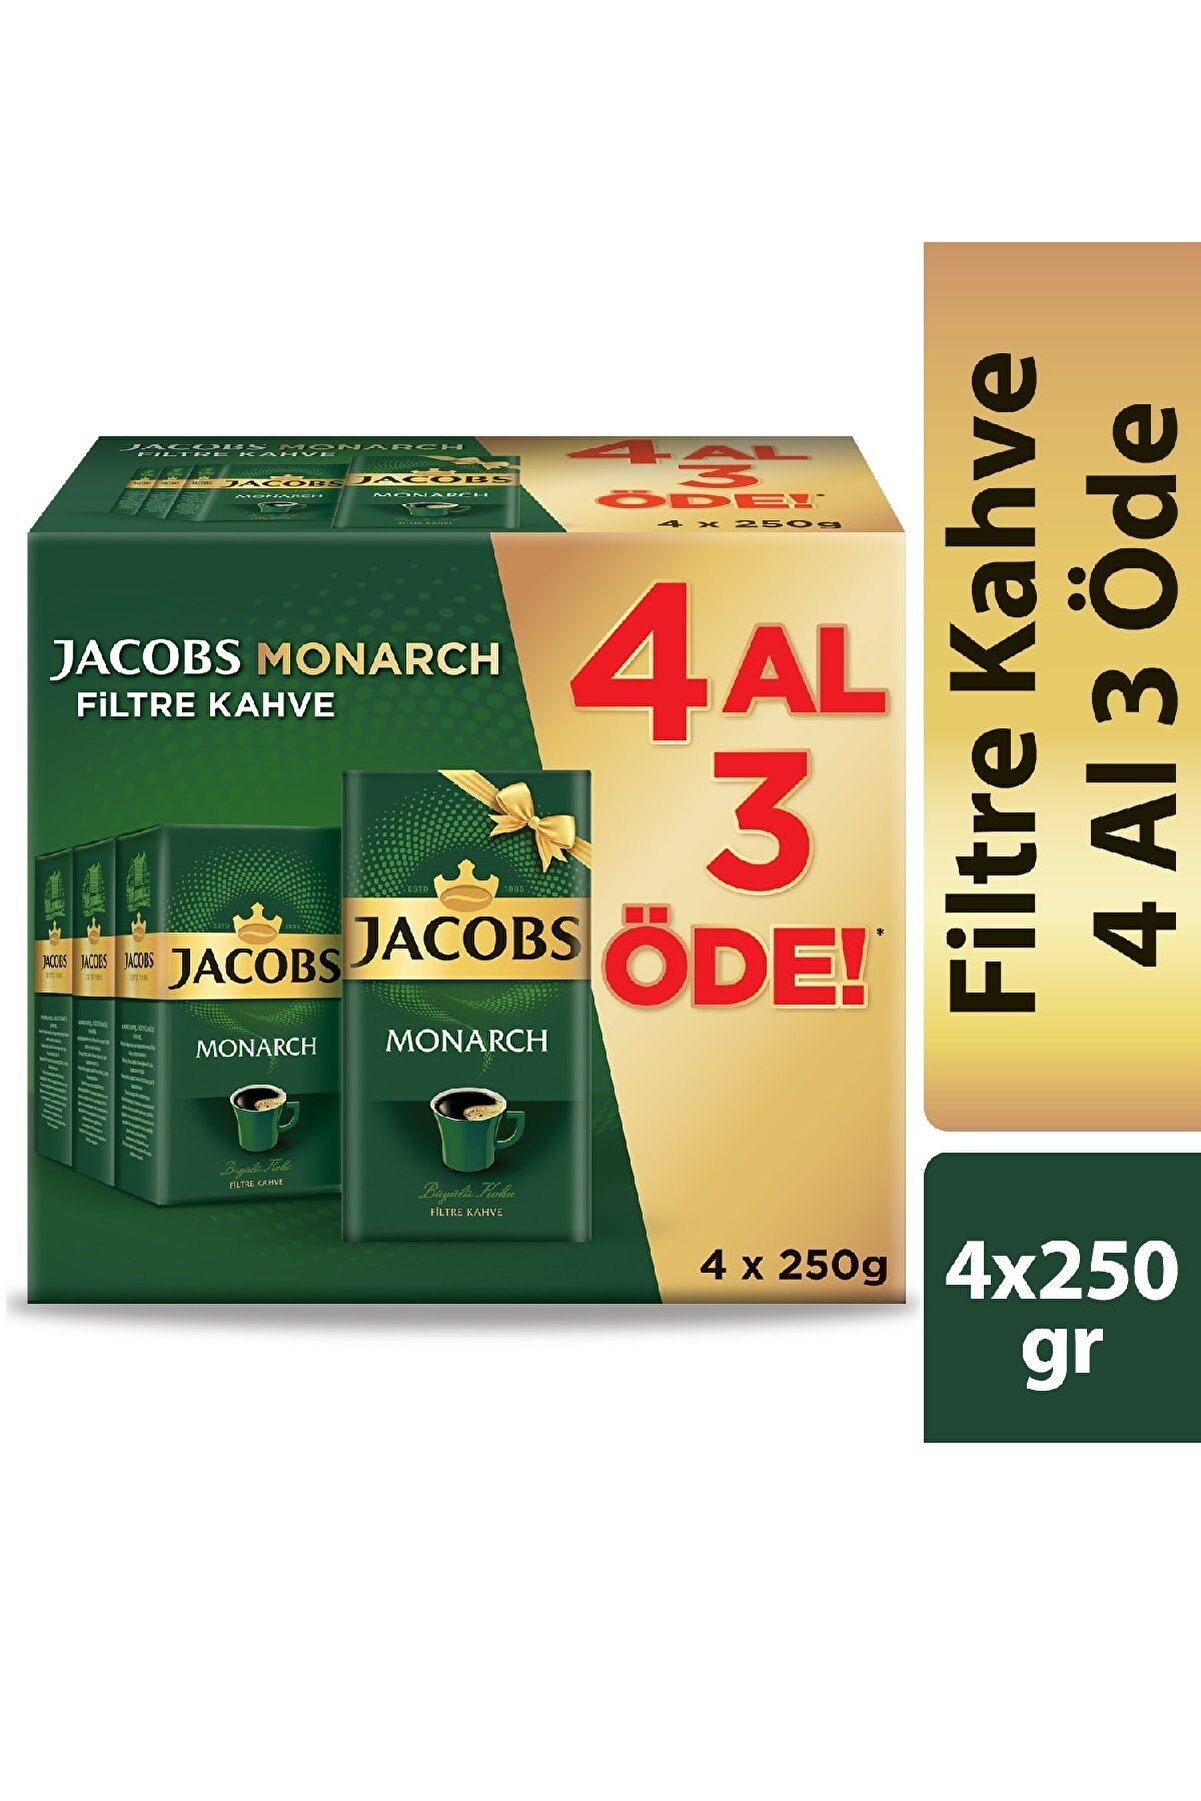 Jacobs Monarch Filtre Kahve 250 gr 4 Al 3 Öde